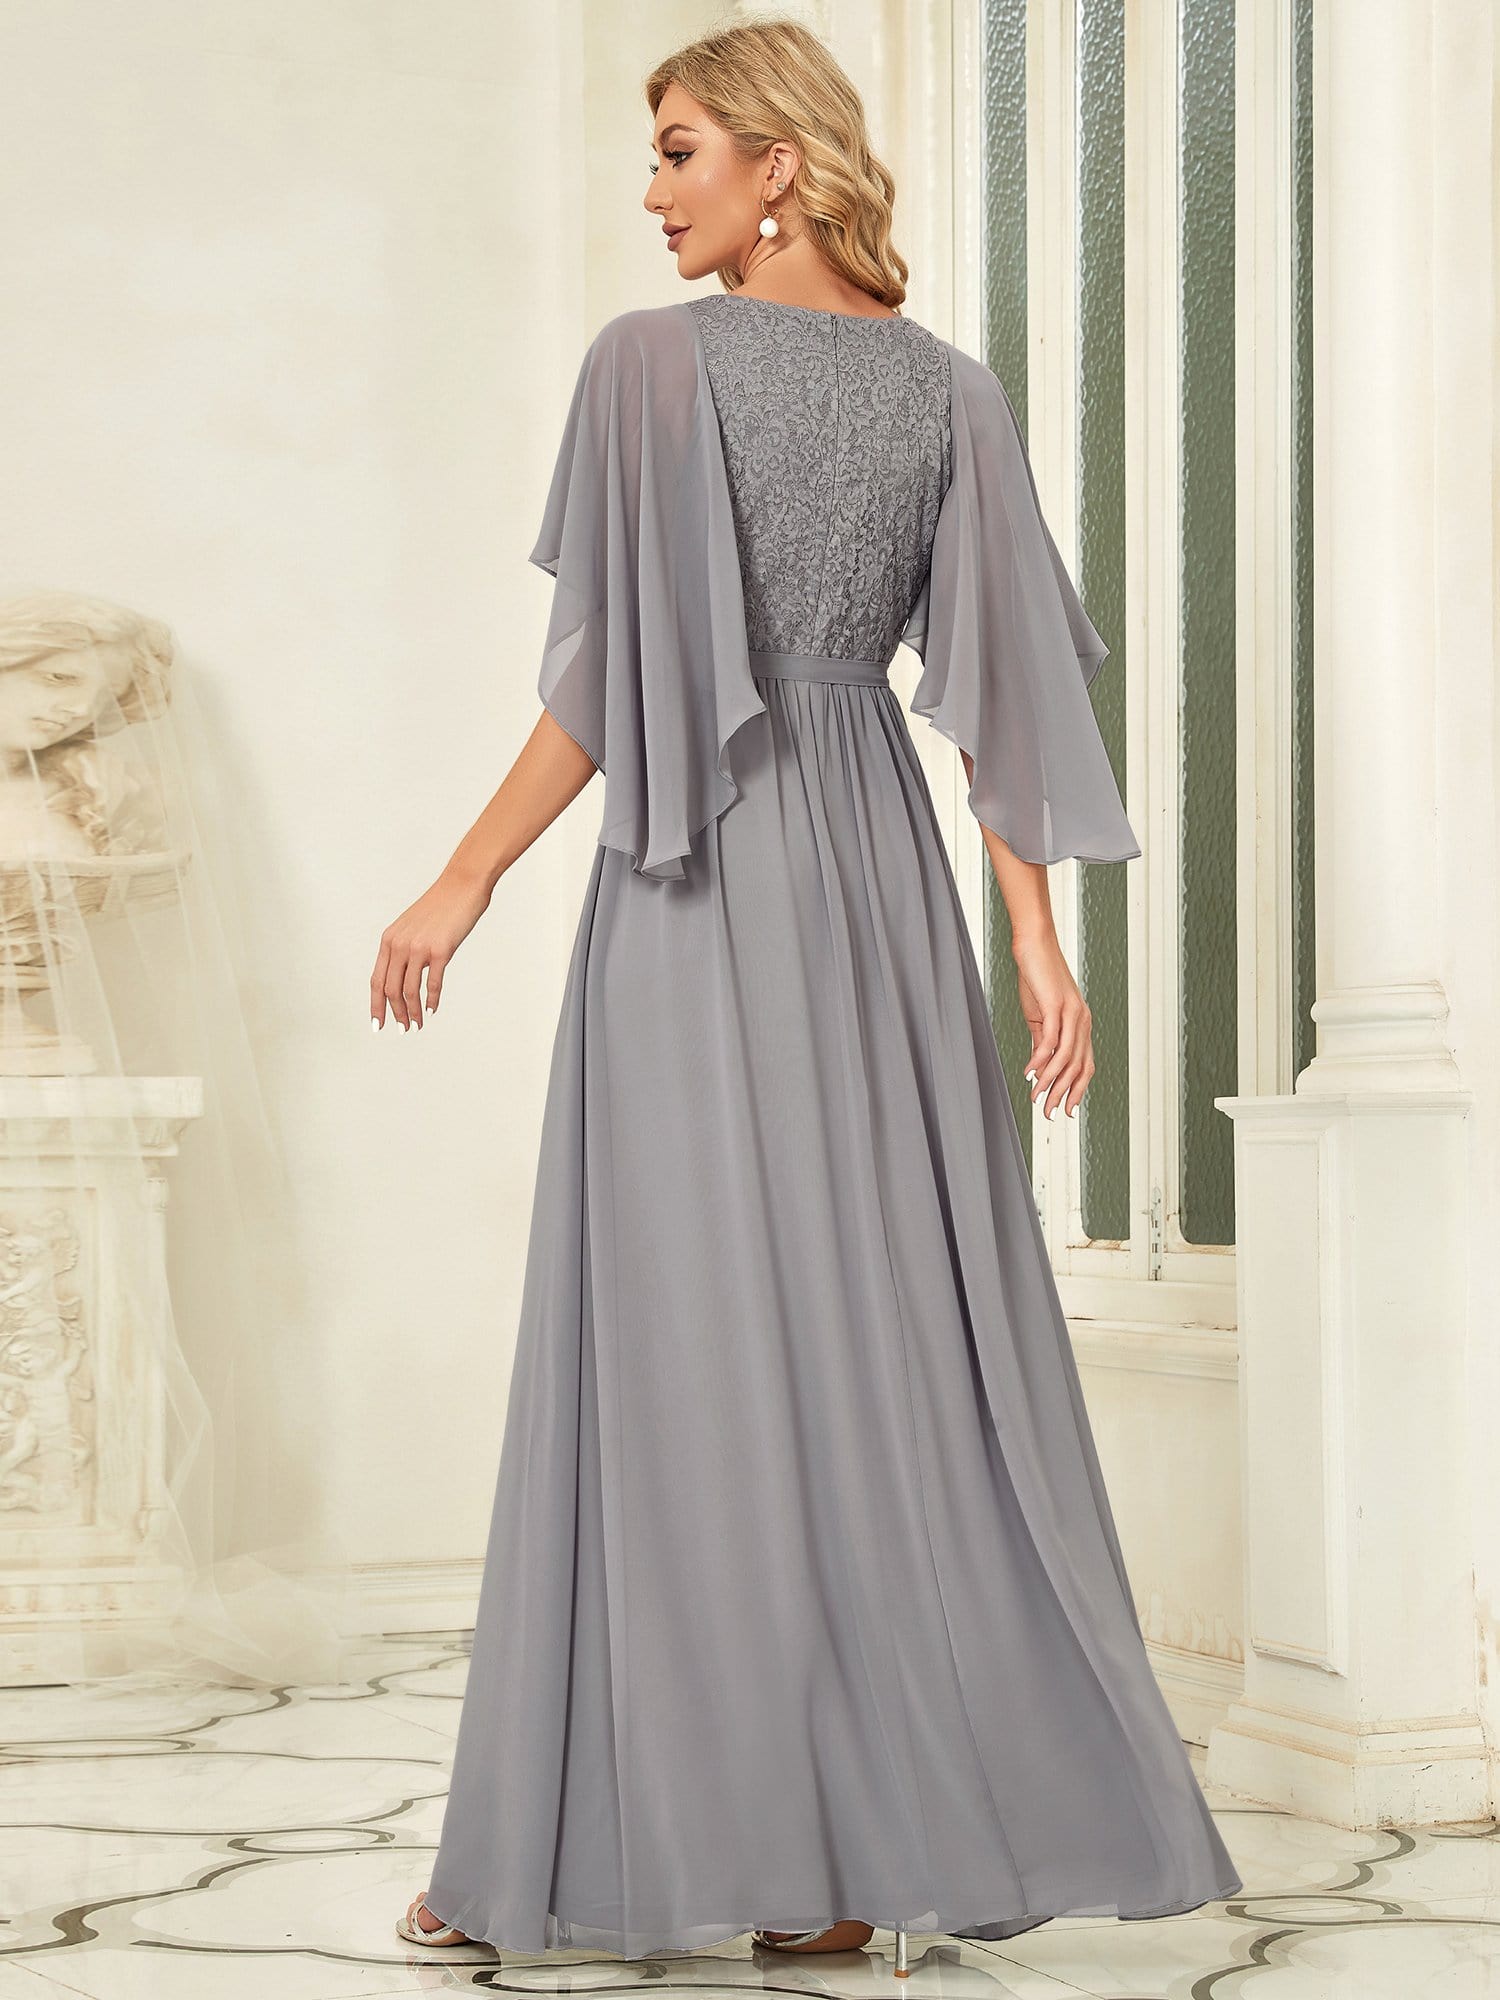 Custom Size Elegant Deep V Neck Chiffon Maxi Evening Dress